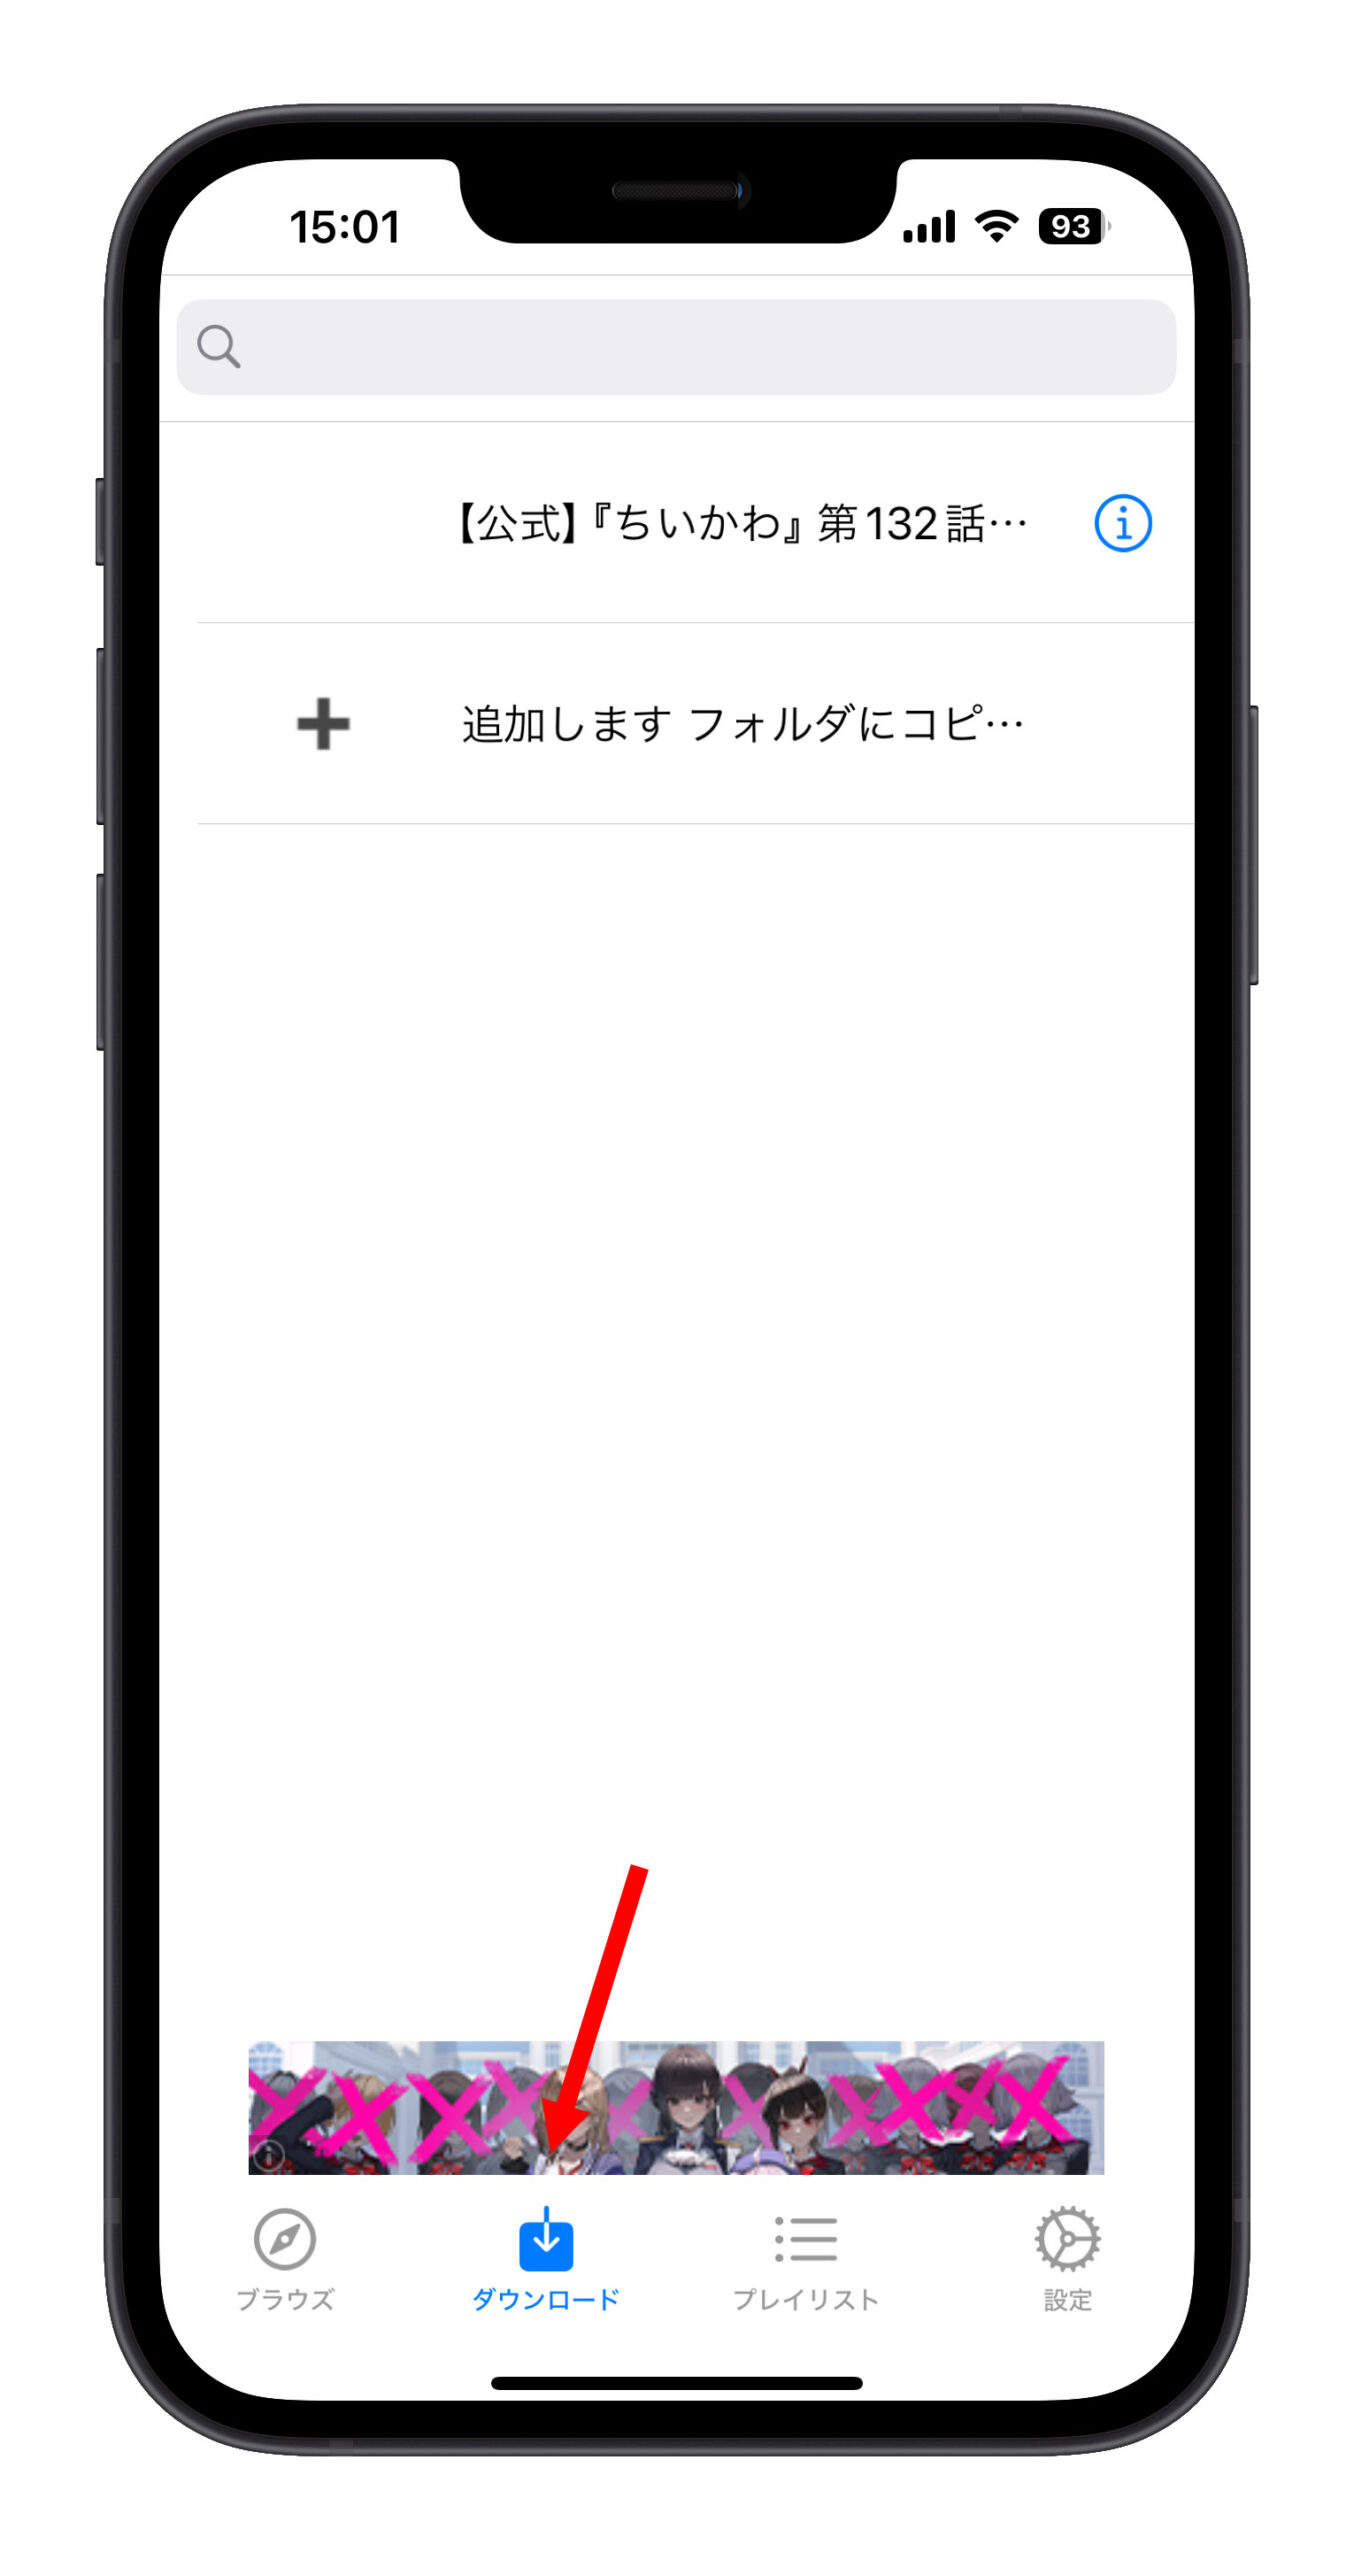 iPhone アプリ Video Master YouTube 動画をダウンロード